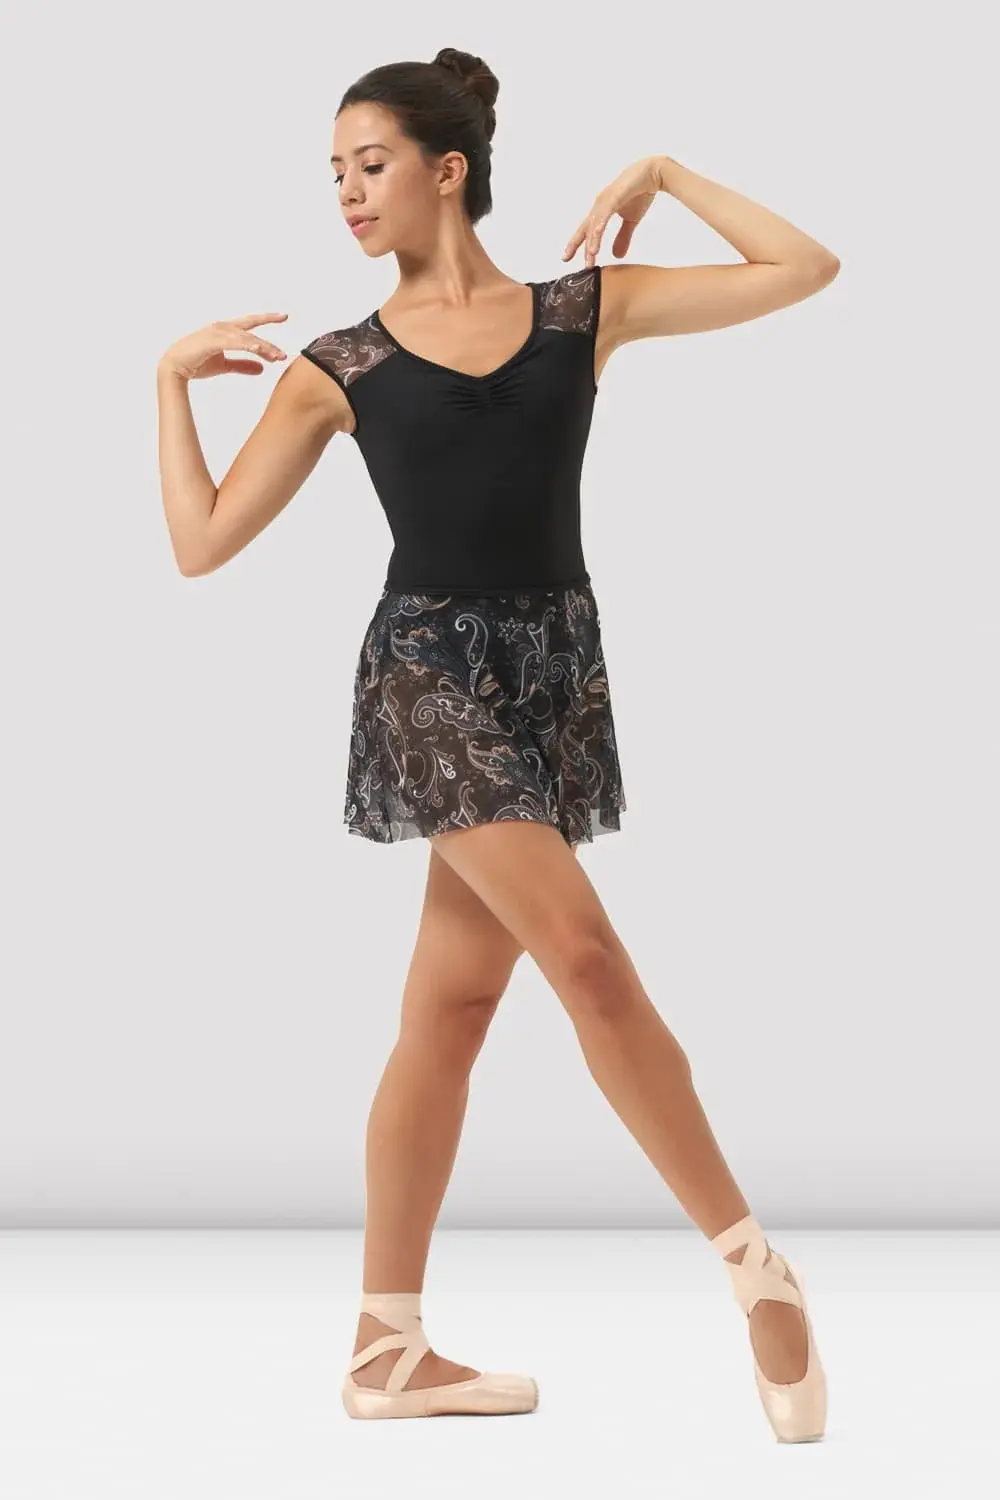 Mirella Ballet Skirt, Mirella MS163